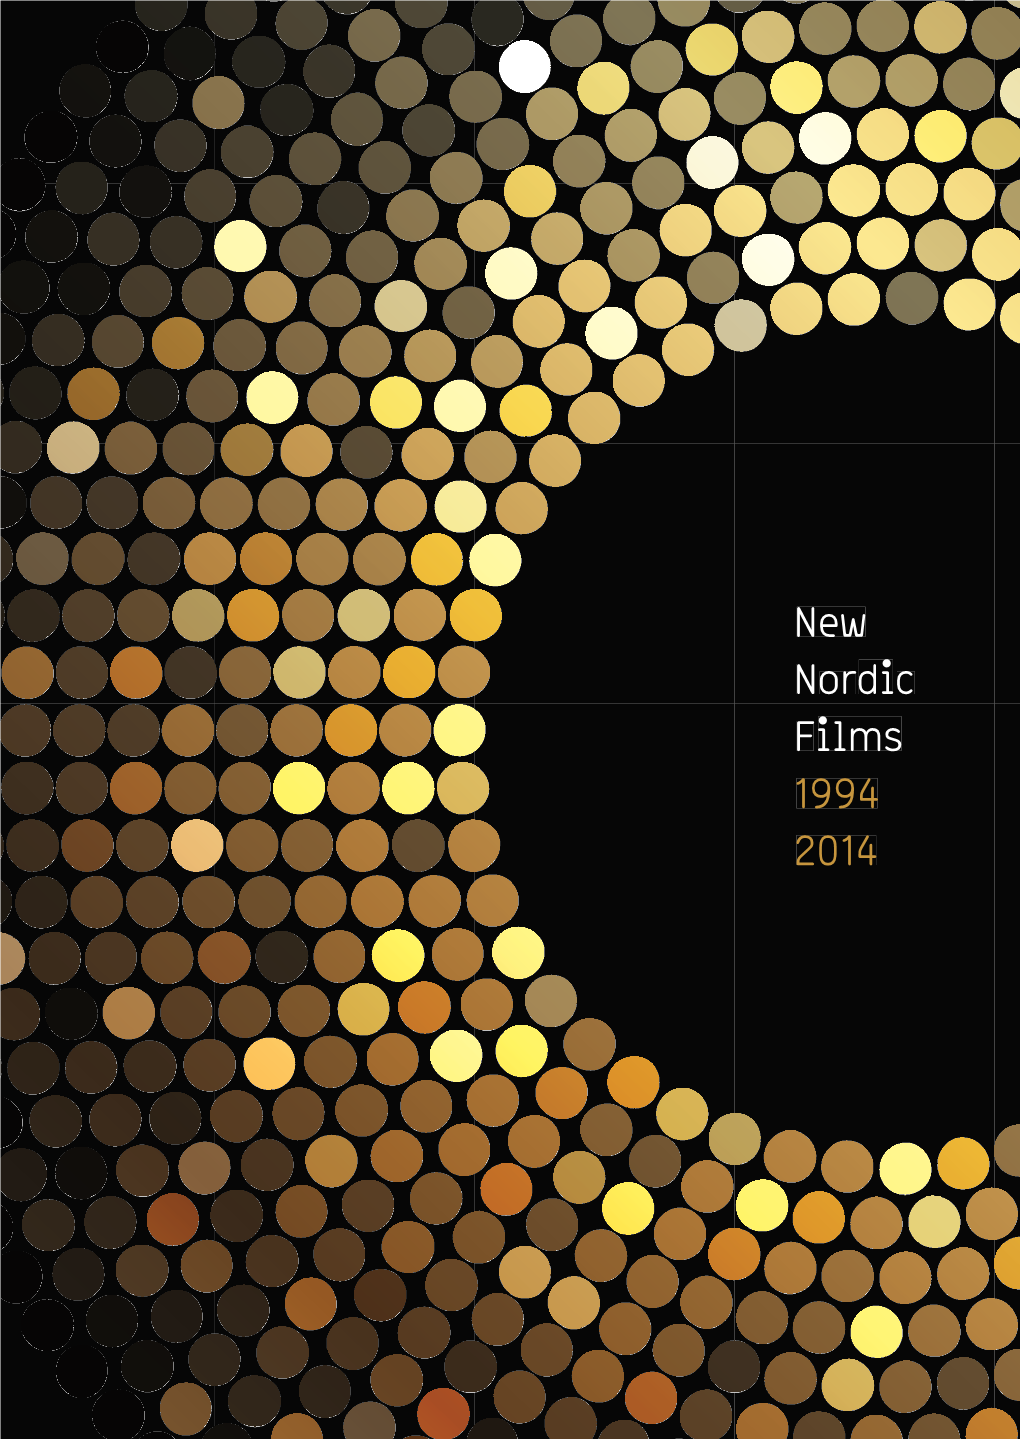 New Nordic Films 1994 2014 C Diorn New 2014 1994 Ilms F